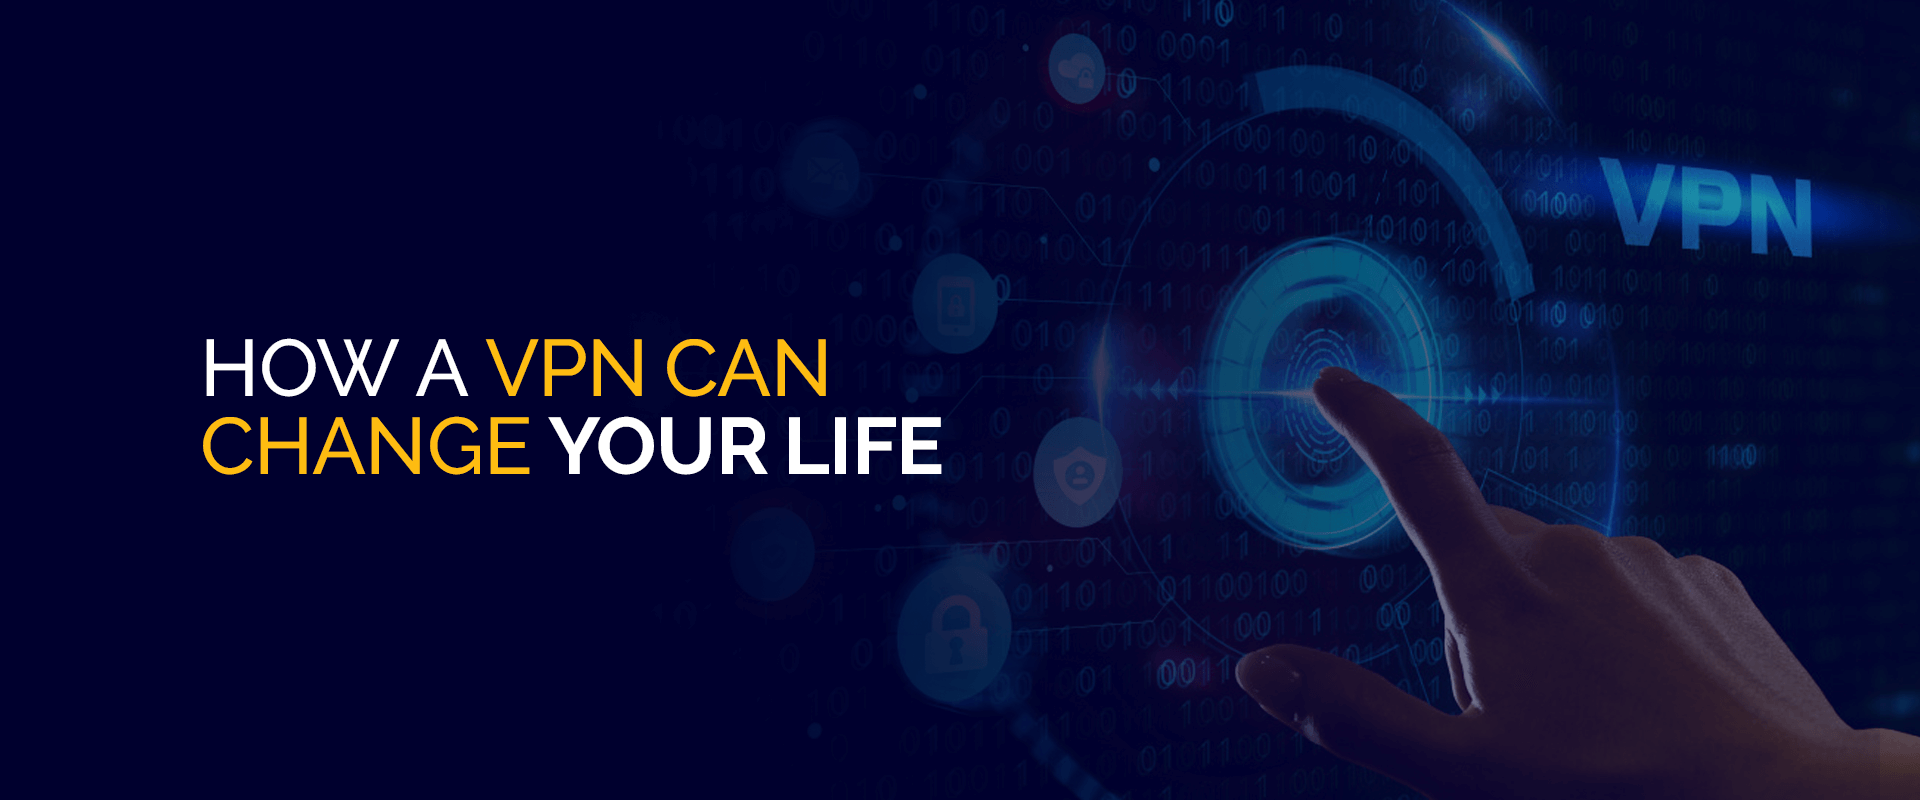 Как VPN может изменить вашу жизнь